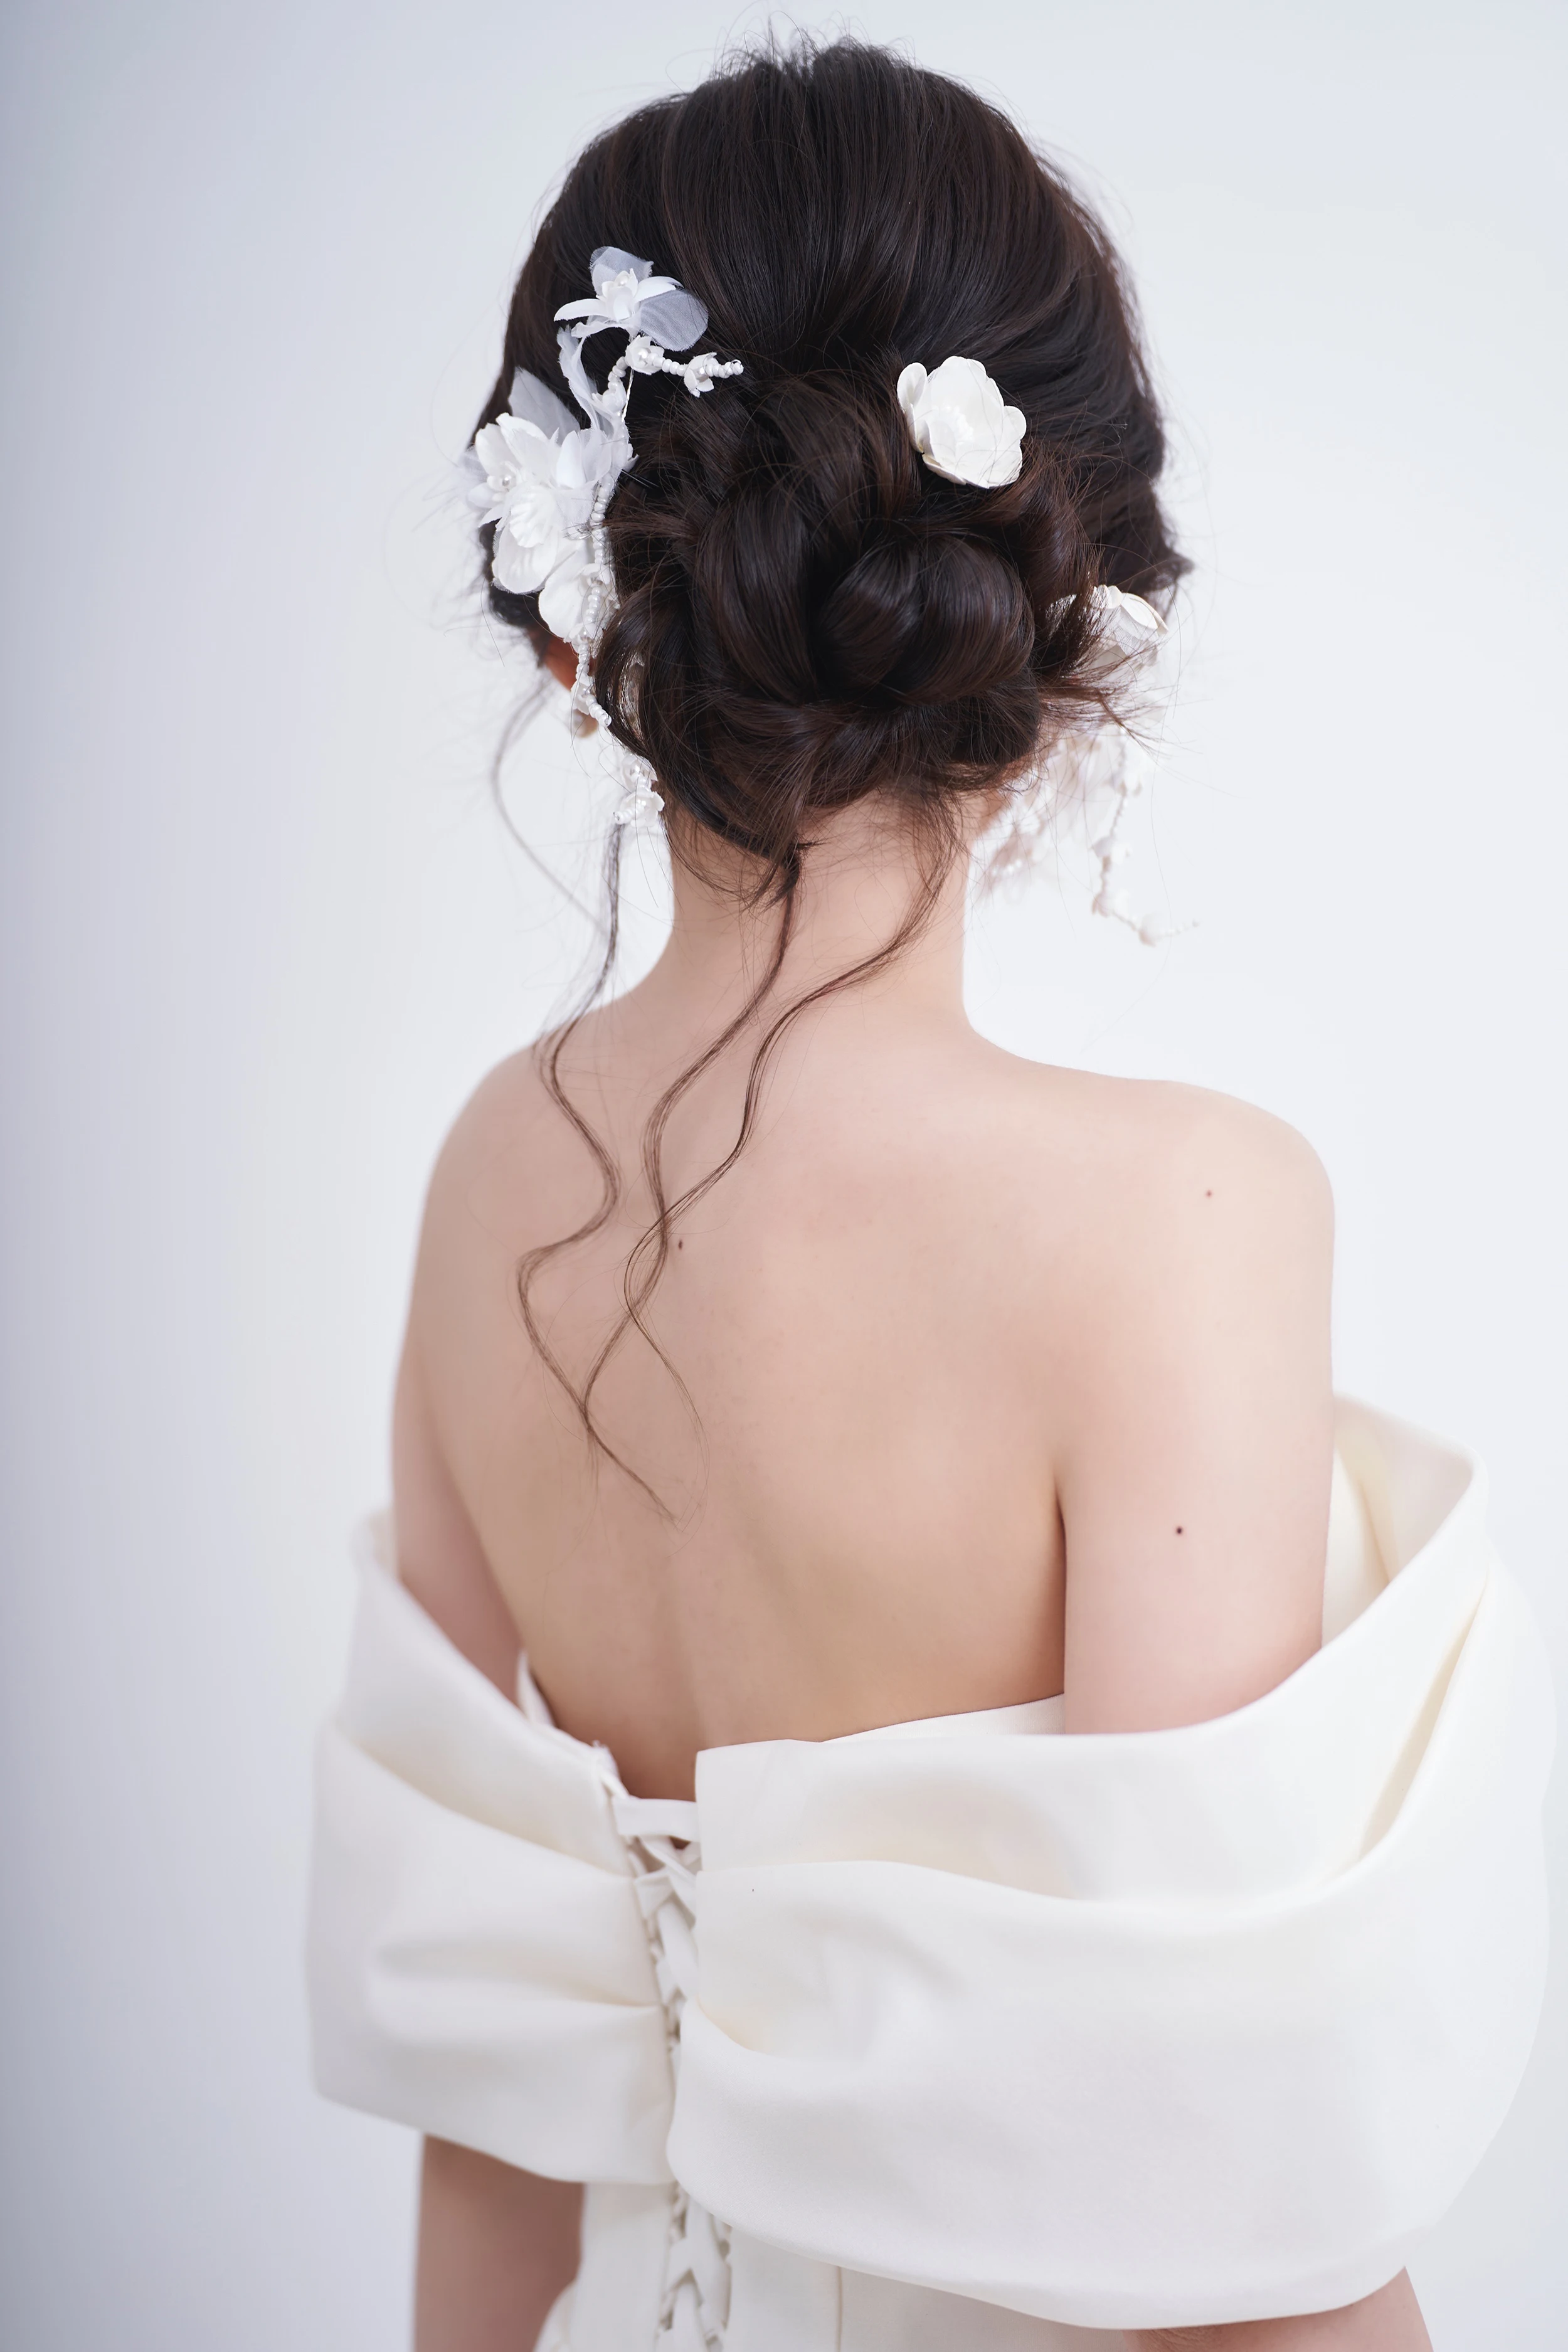 Сватбена рокля от сатен с драпировкой на раменете Последната мечти Бял цвят SDL-4-9 H049